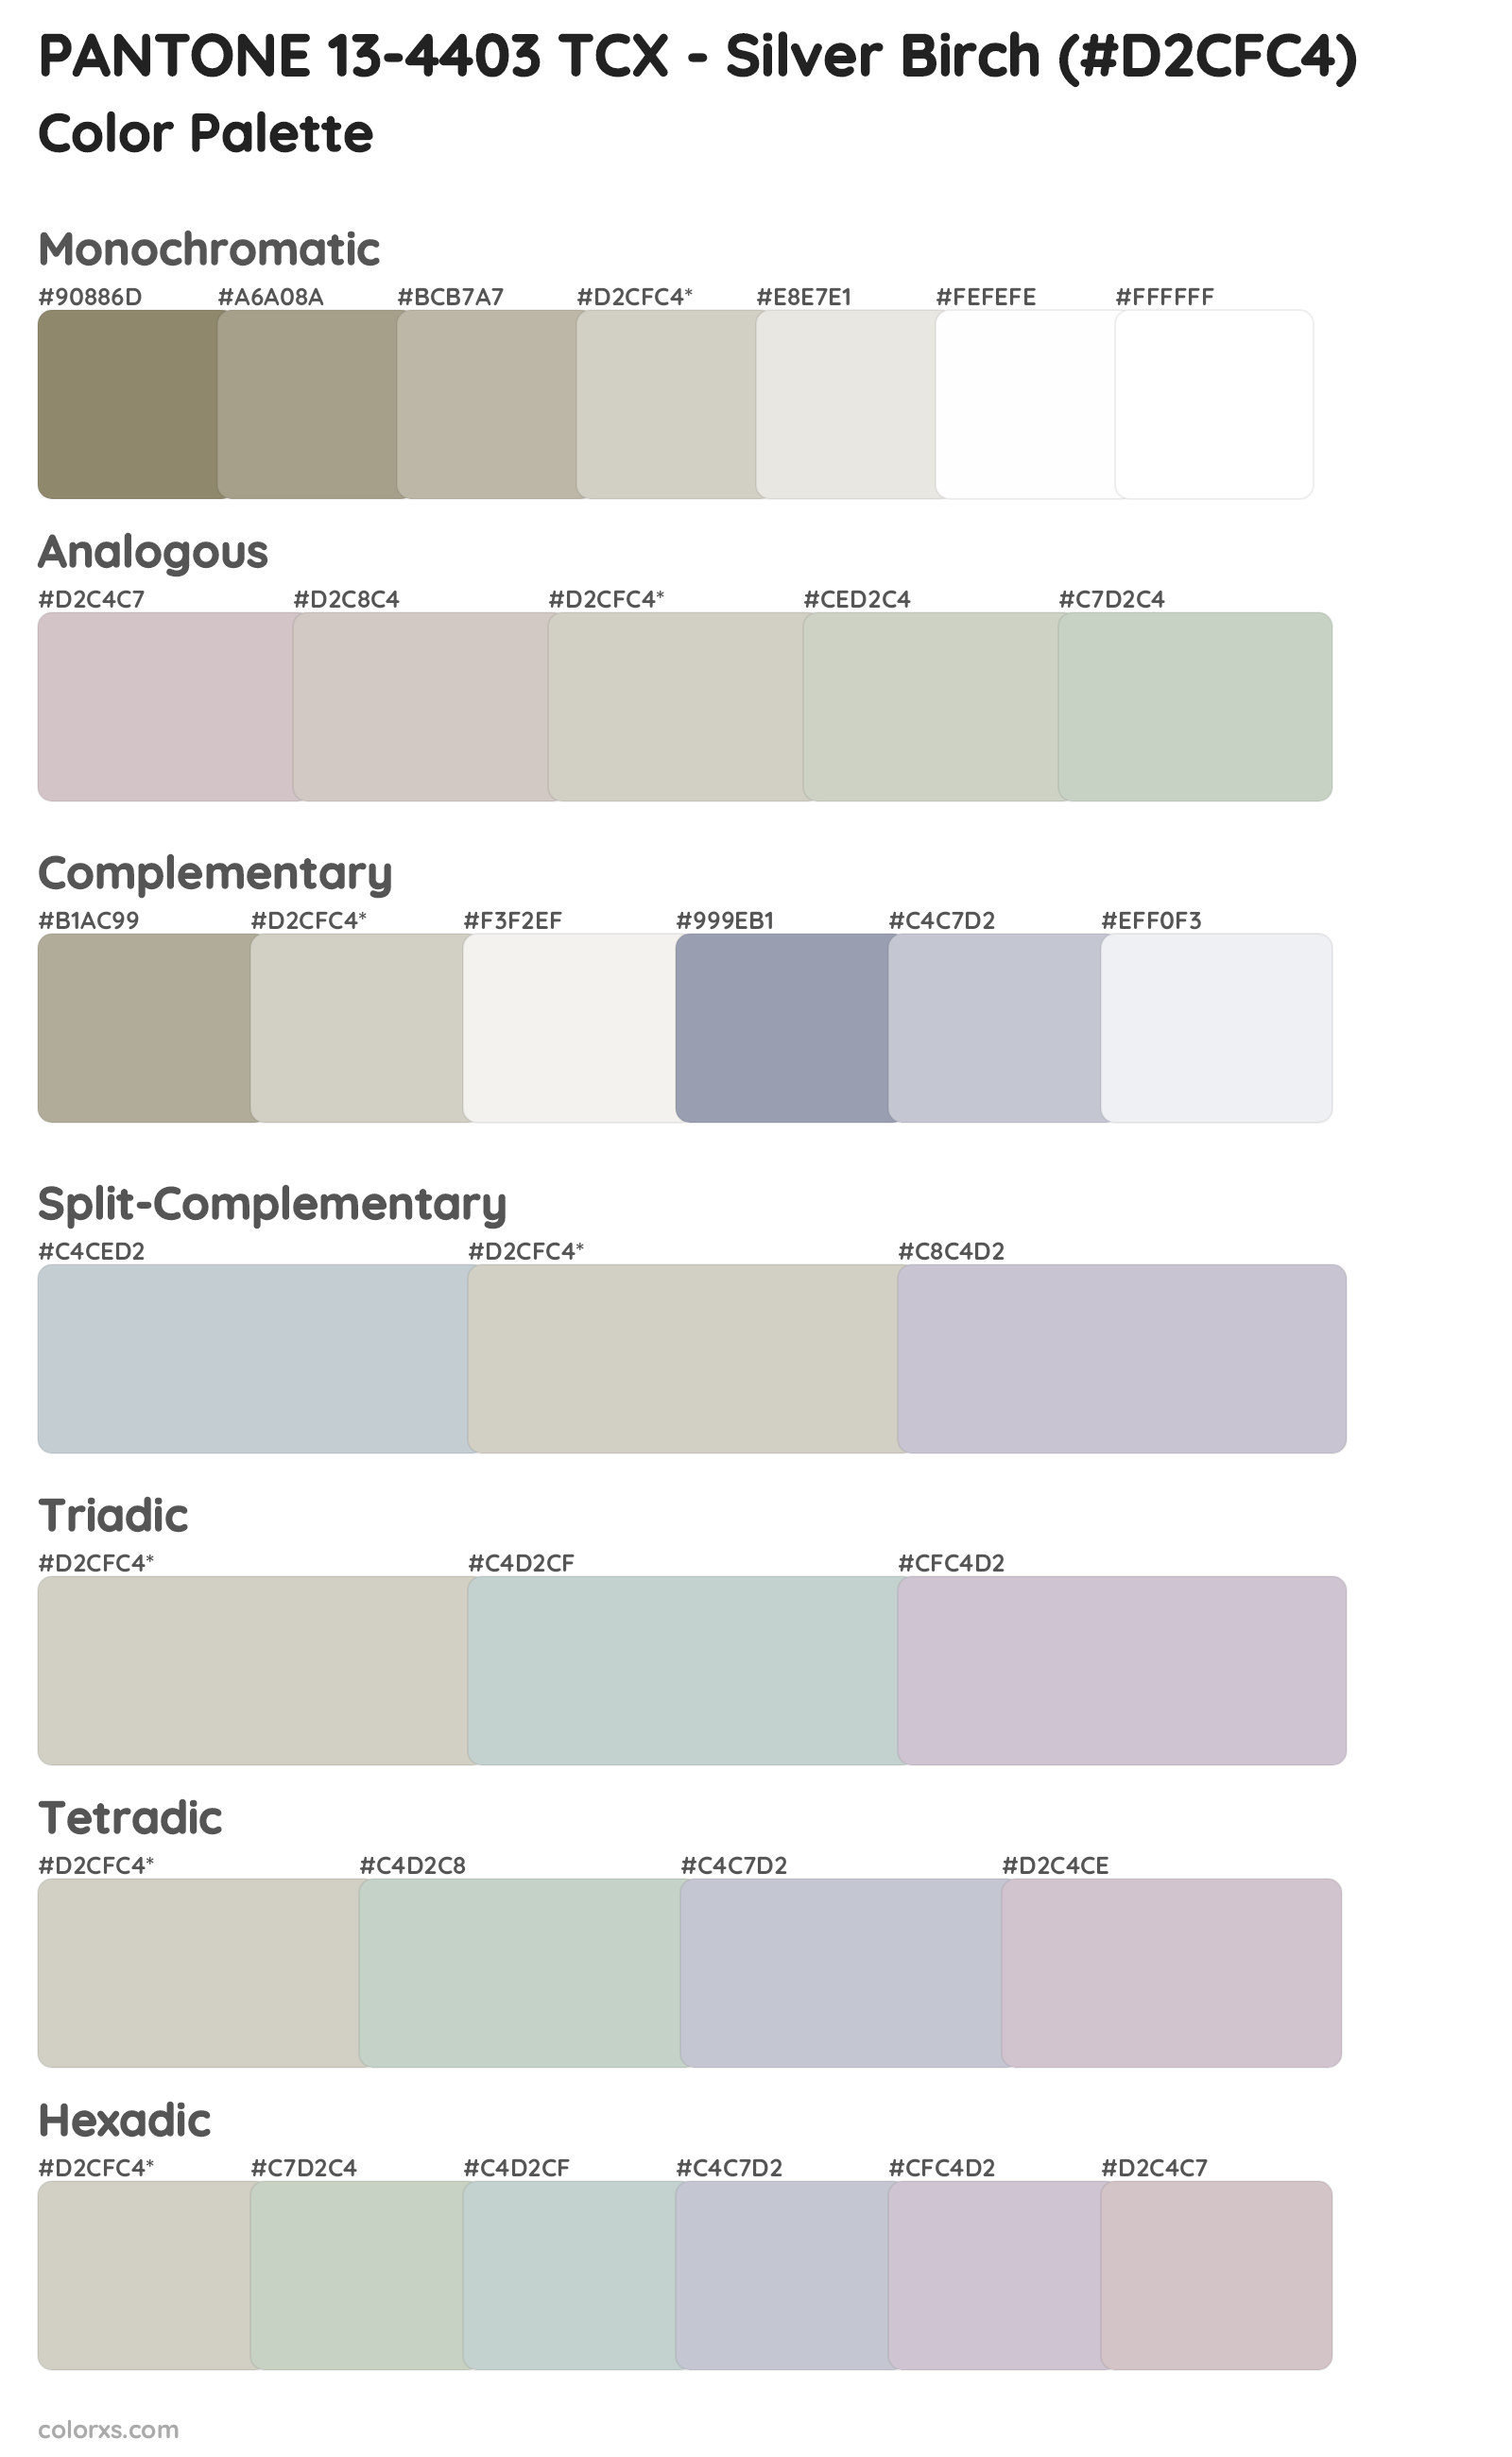 PANTONE 13-4403 TCX - Silver Birch Color Scheme Palettes